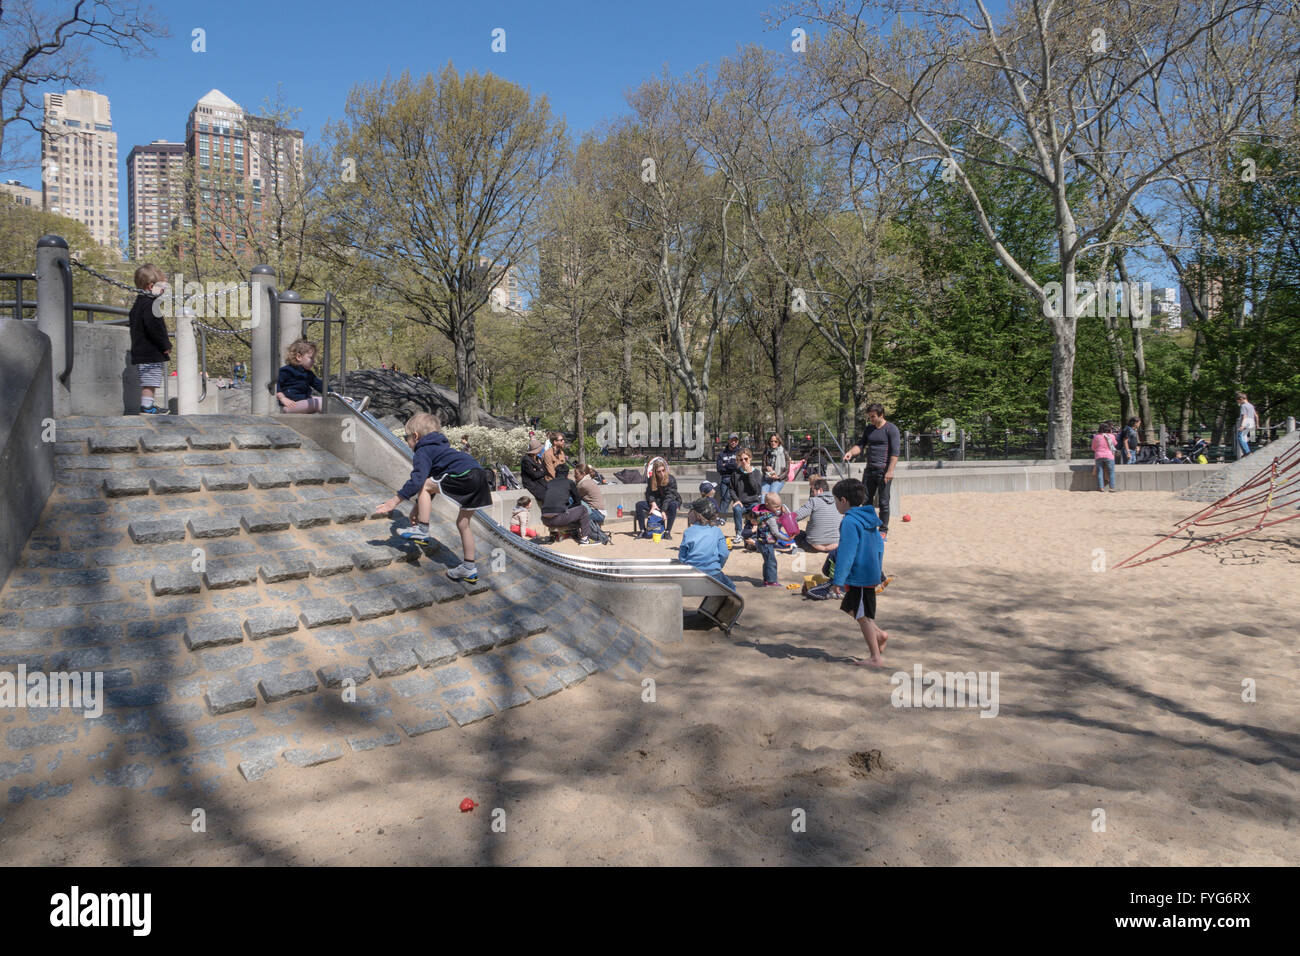 Children Playing, Heckscher Playground, Central Park, NYC Stock Photo